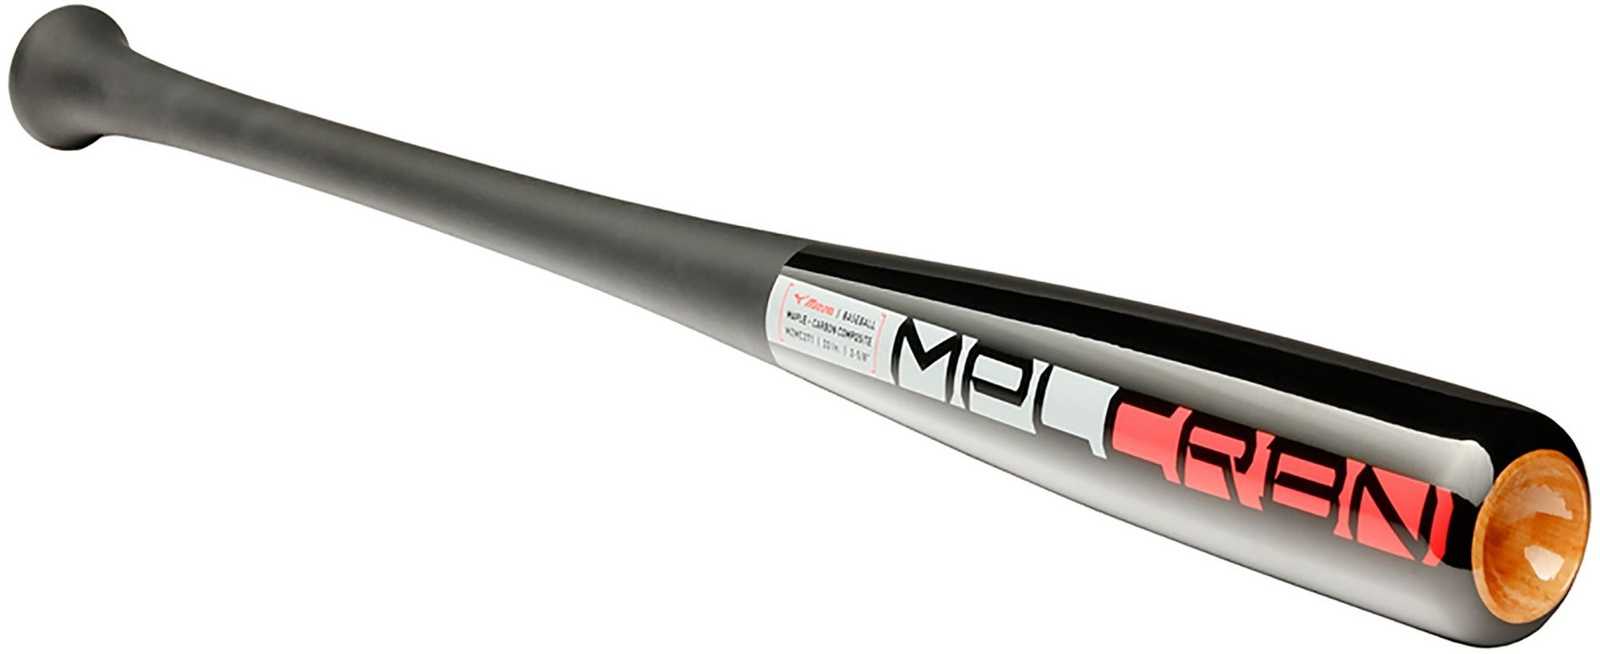 Mizuno Elite Maple Carbon 271 Composite Bat - Black Red - HIT a Double - 1